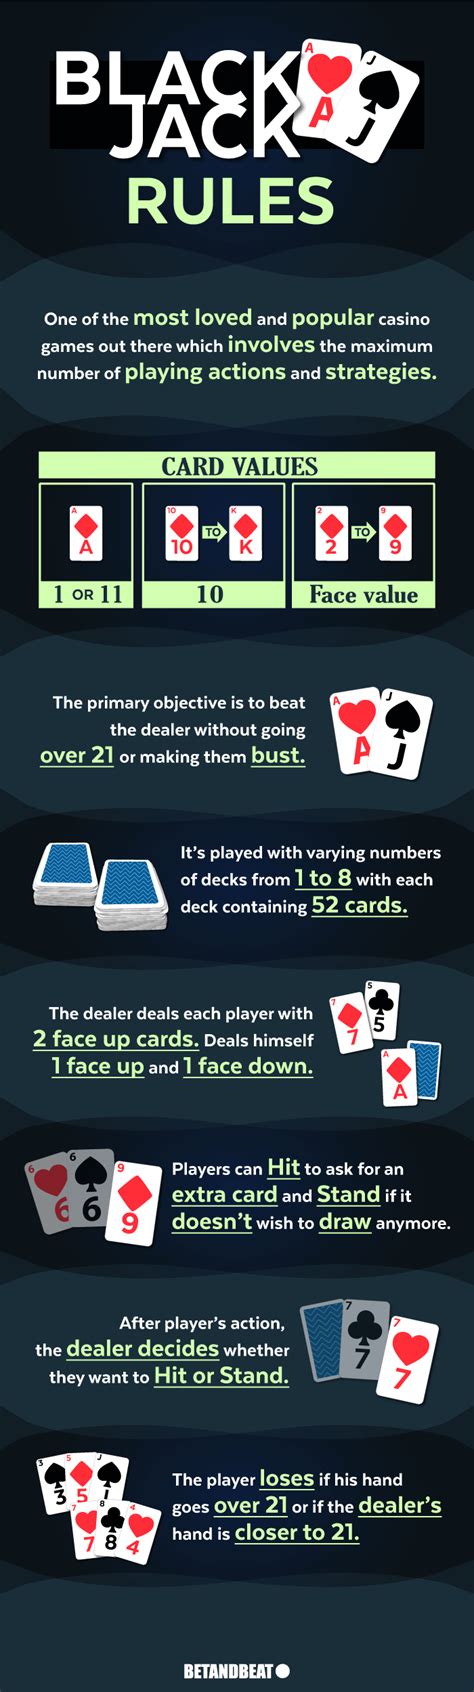 blackjack dealer rules uk